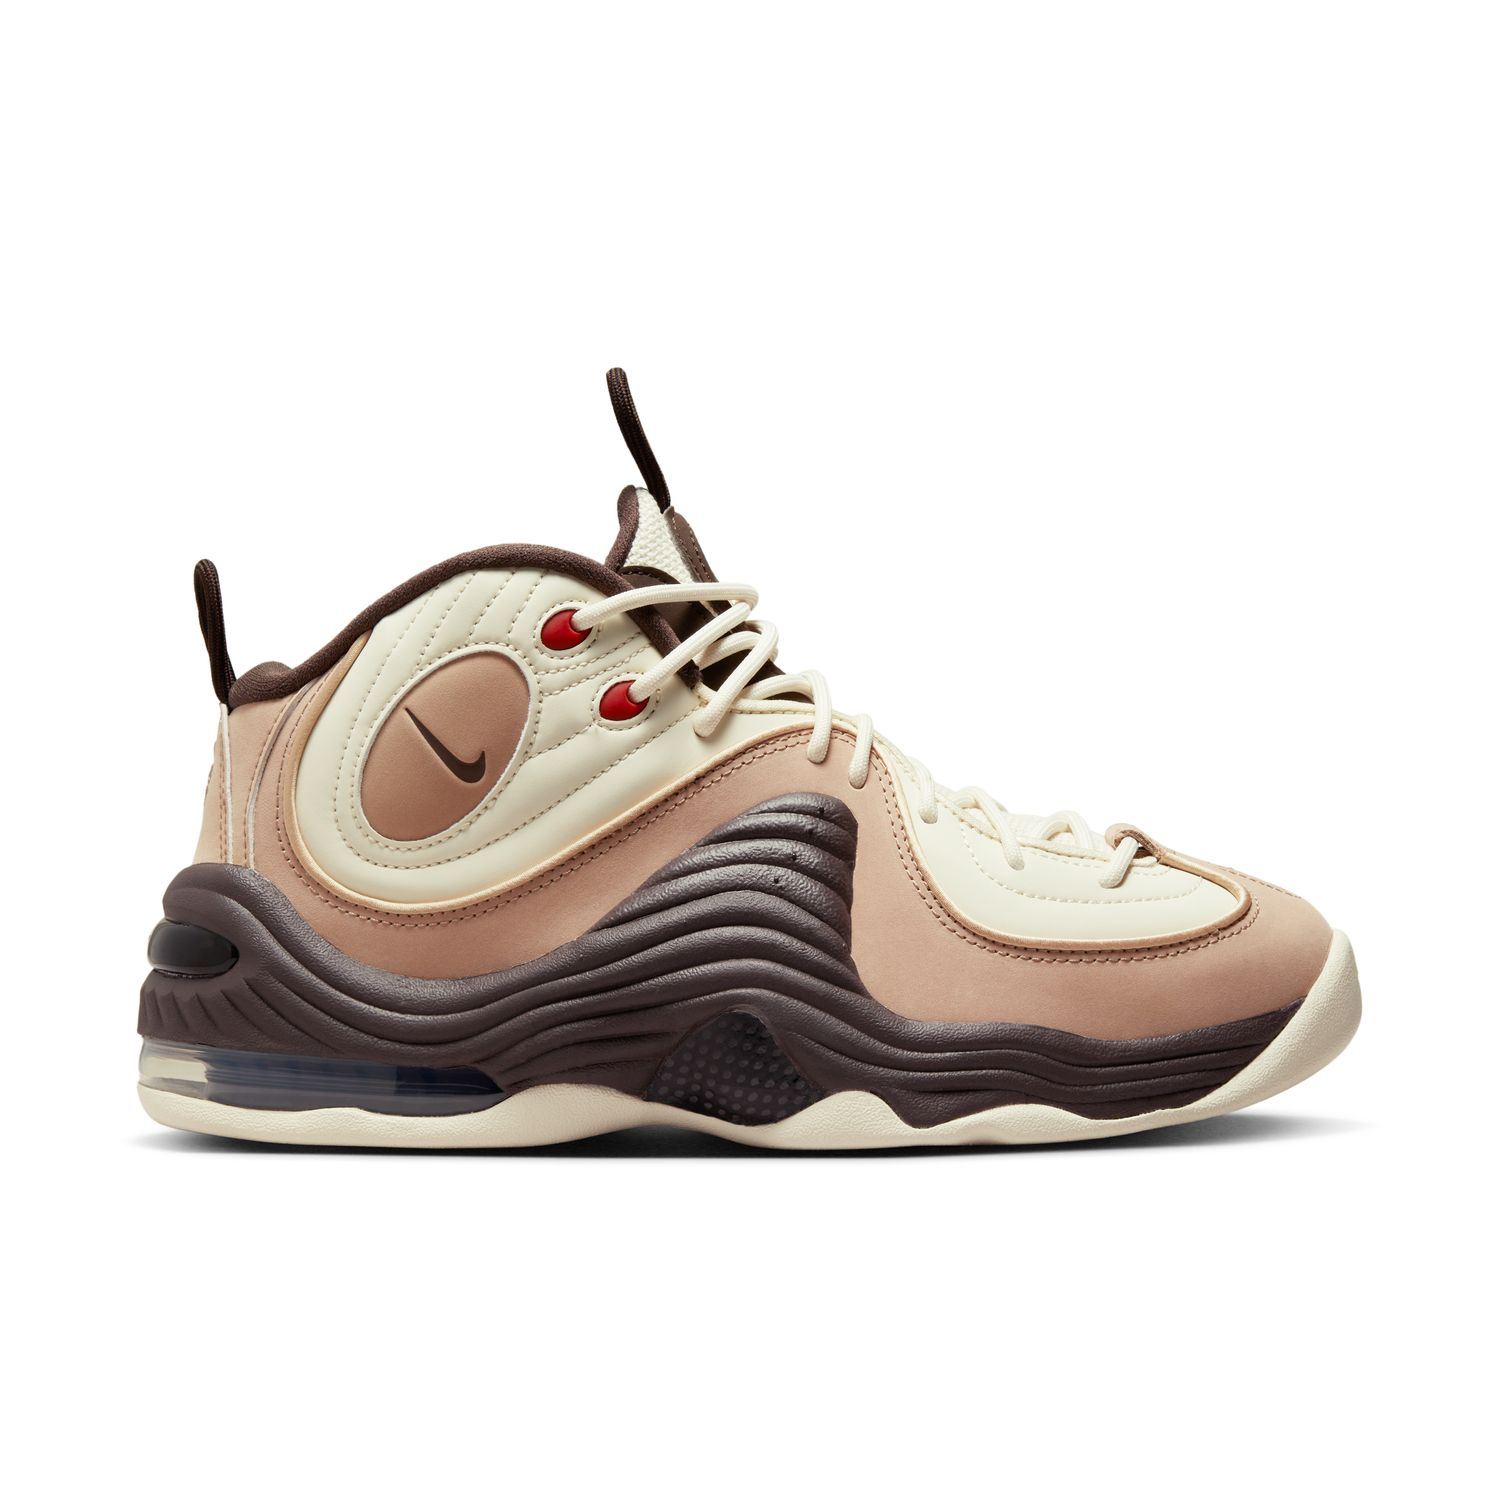 Nike Air Penny 2 "Baroque Brown" - Pánske - Tenisky Nike - Biele - FB8885-100 - Veľkosť: 40.5